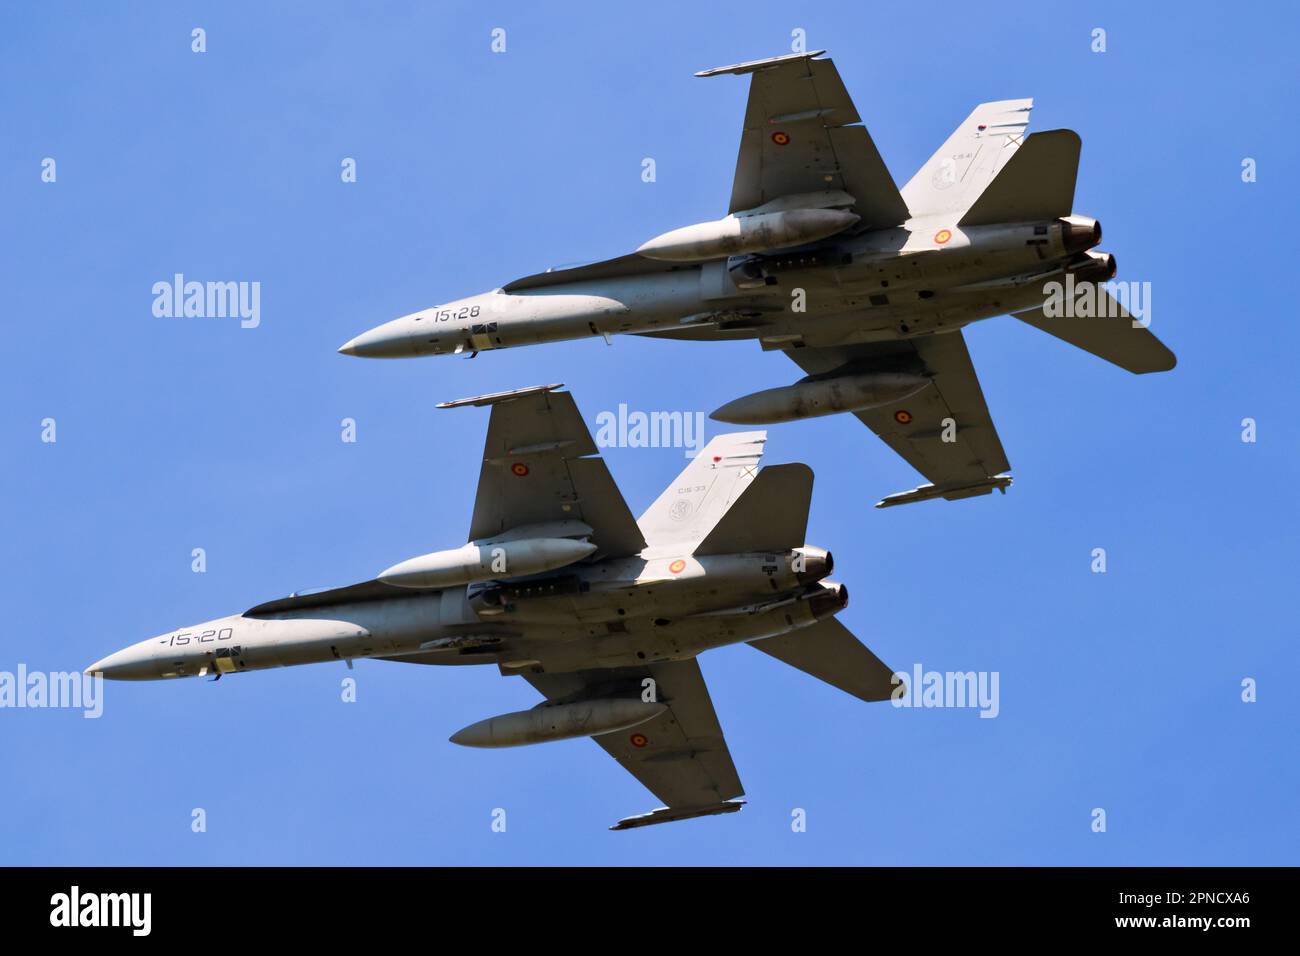 Avions de chasse Hornet Boeing F/A-18 de la Force aérienne espagnole en vol. Pays-Bas - 19 avril 2018 Banque D'Images